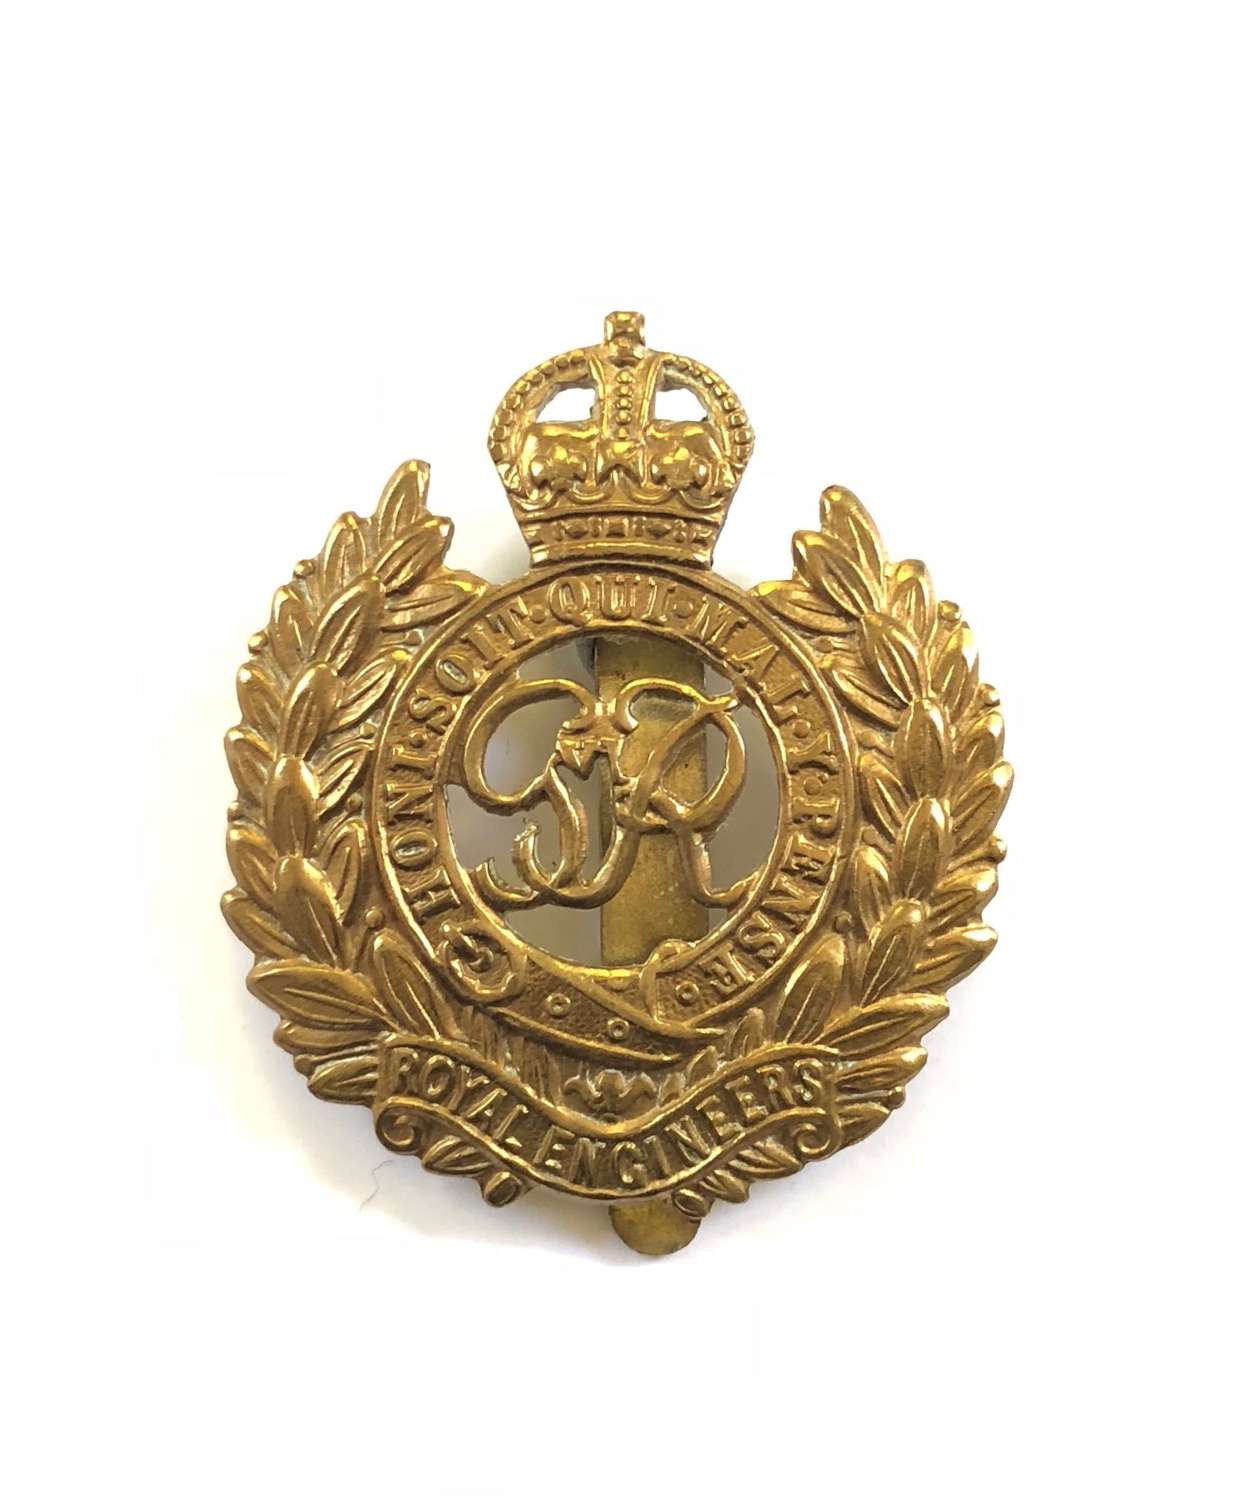 WW2 Pattern Royal Engineers Cap Badge.